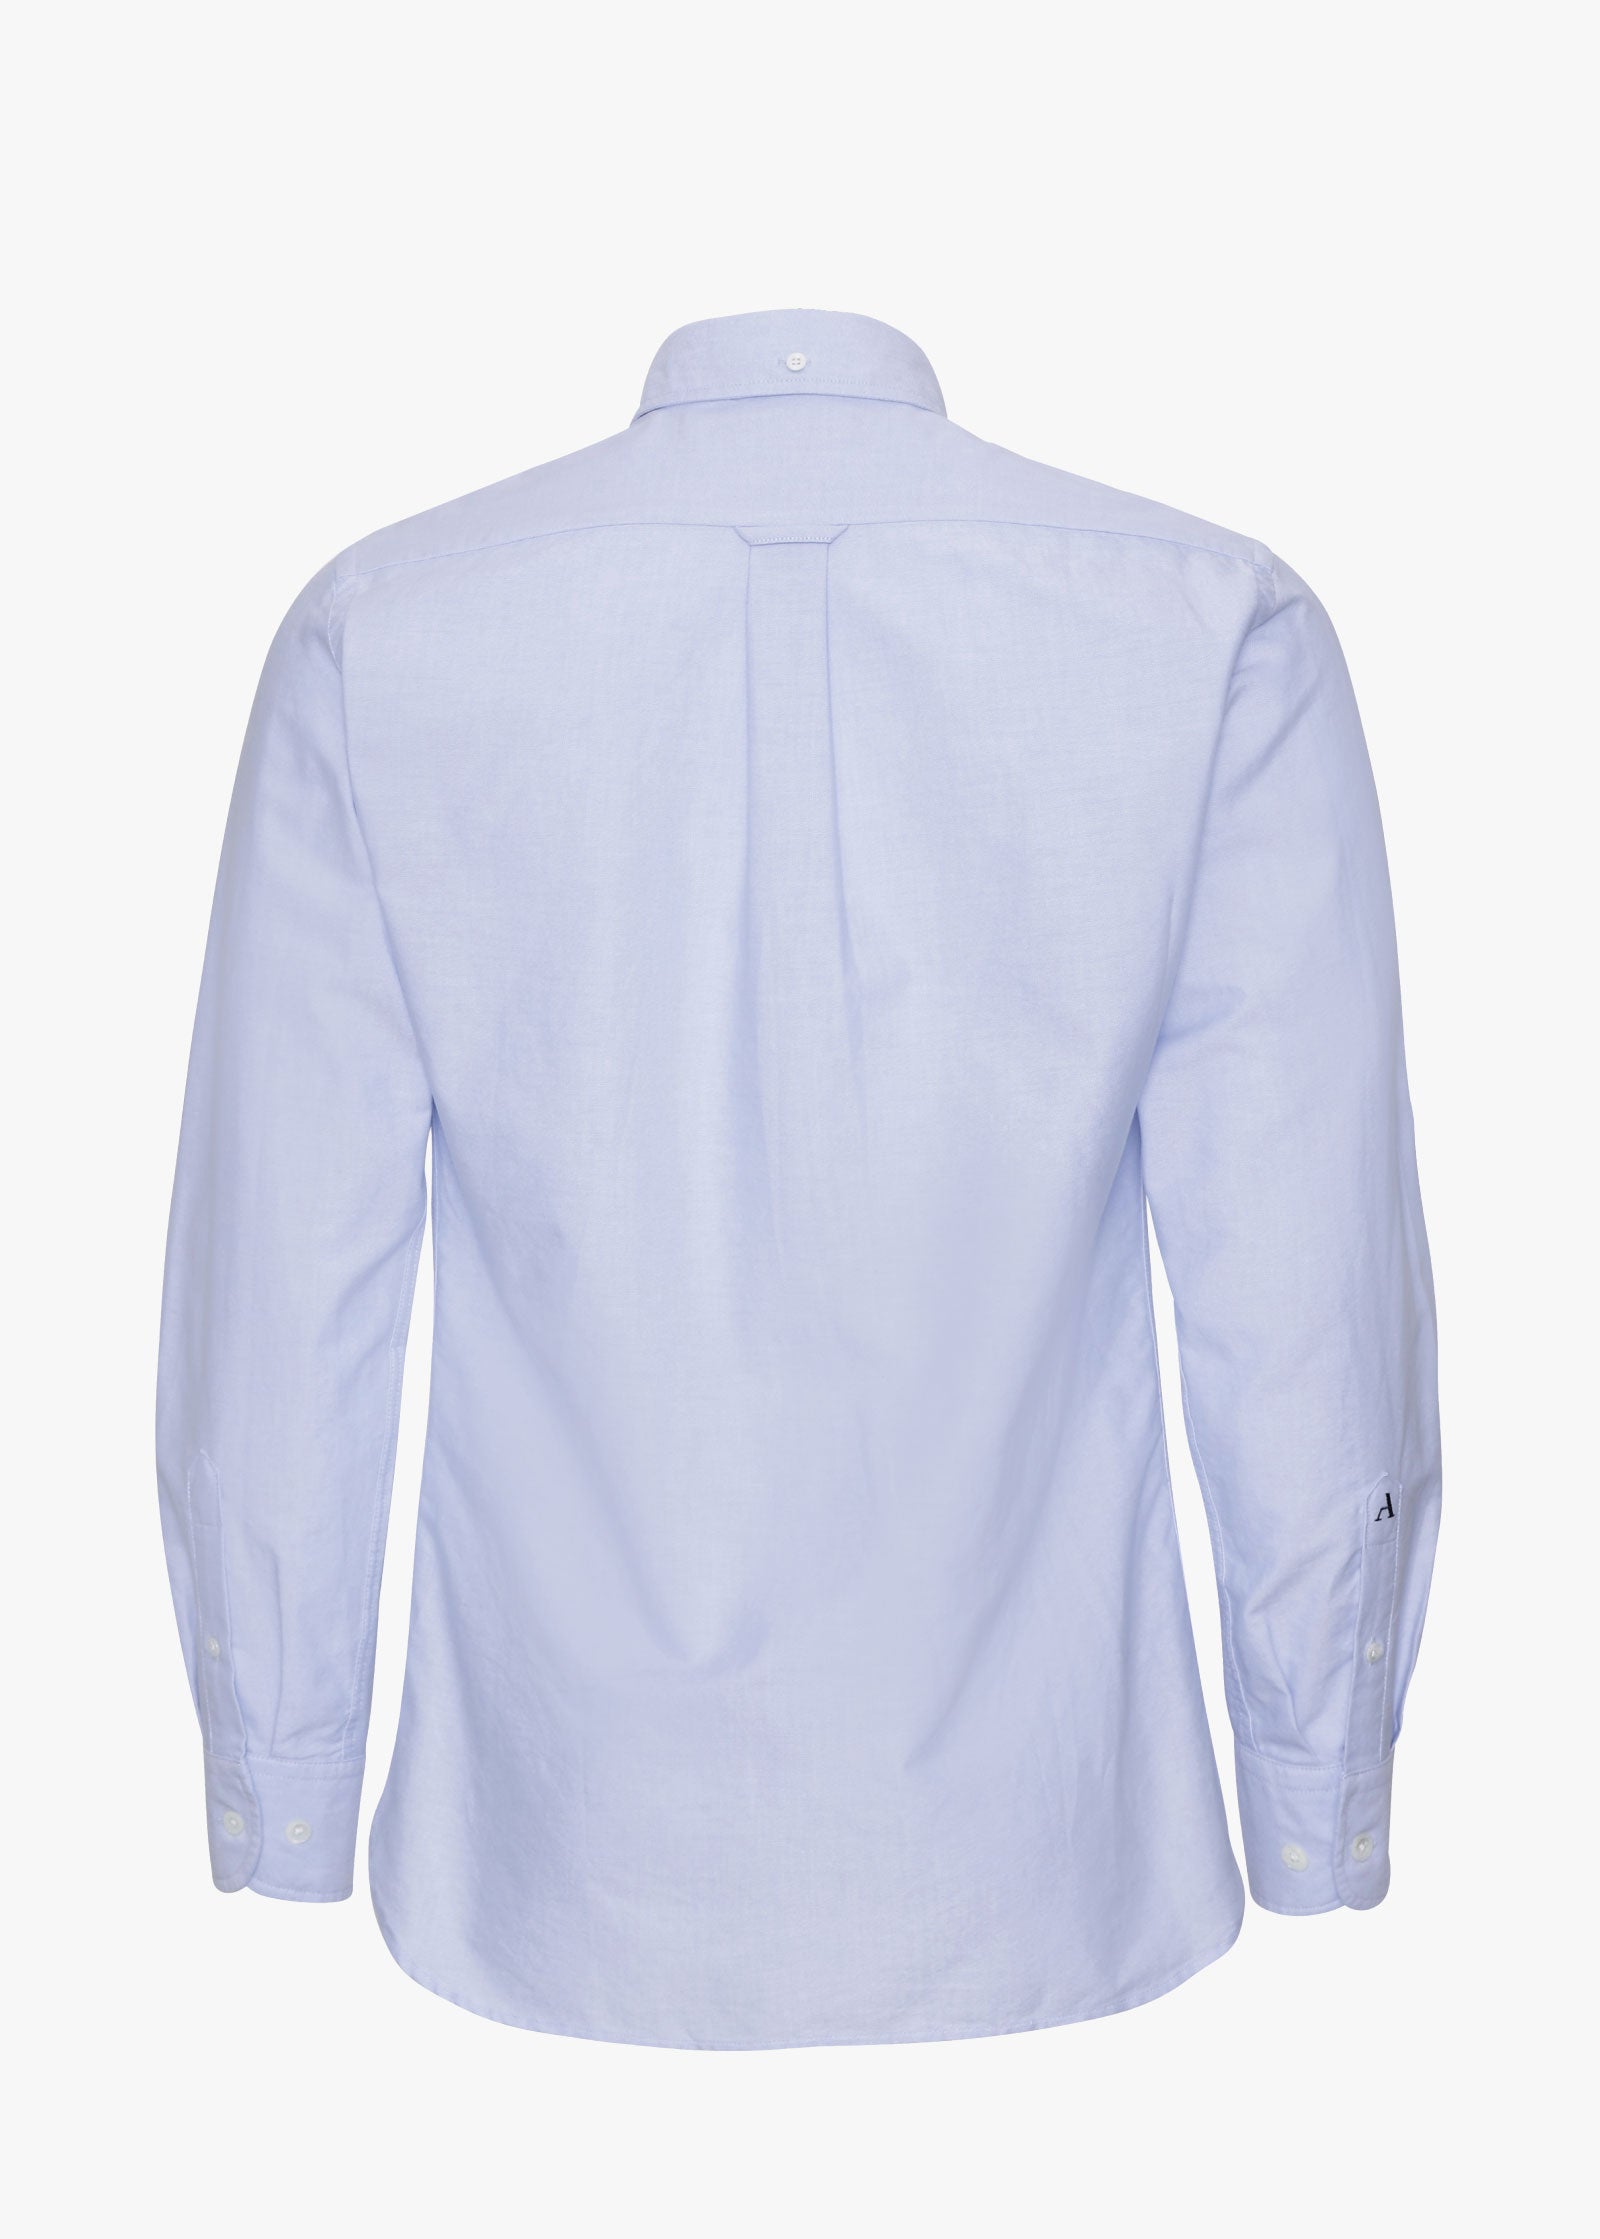 Oxford Shirt, Light Blue